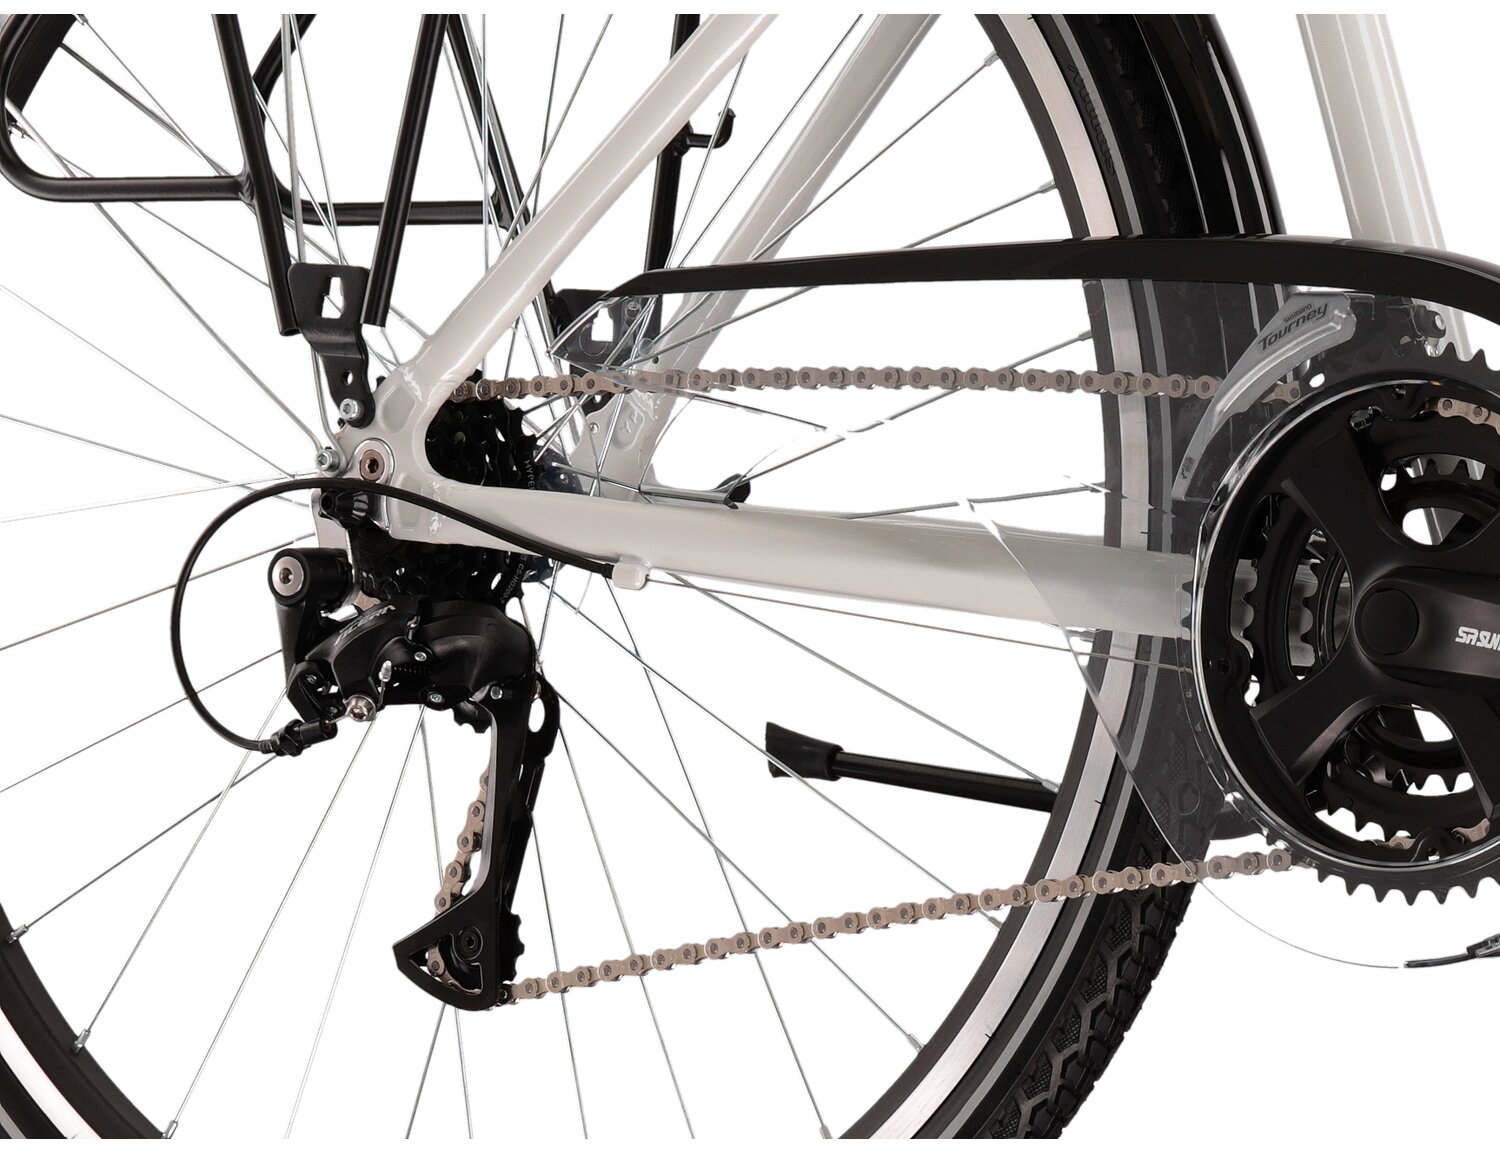  Tylna siedmiobiegowa przerzutka Shimano Acera T3000 oraz hamulce v-brake w rowerze trekkingowym KROSS Trans 4.0 